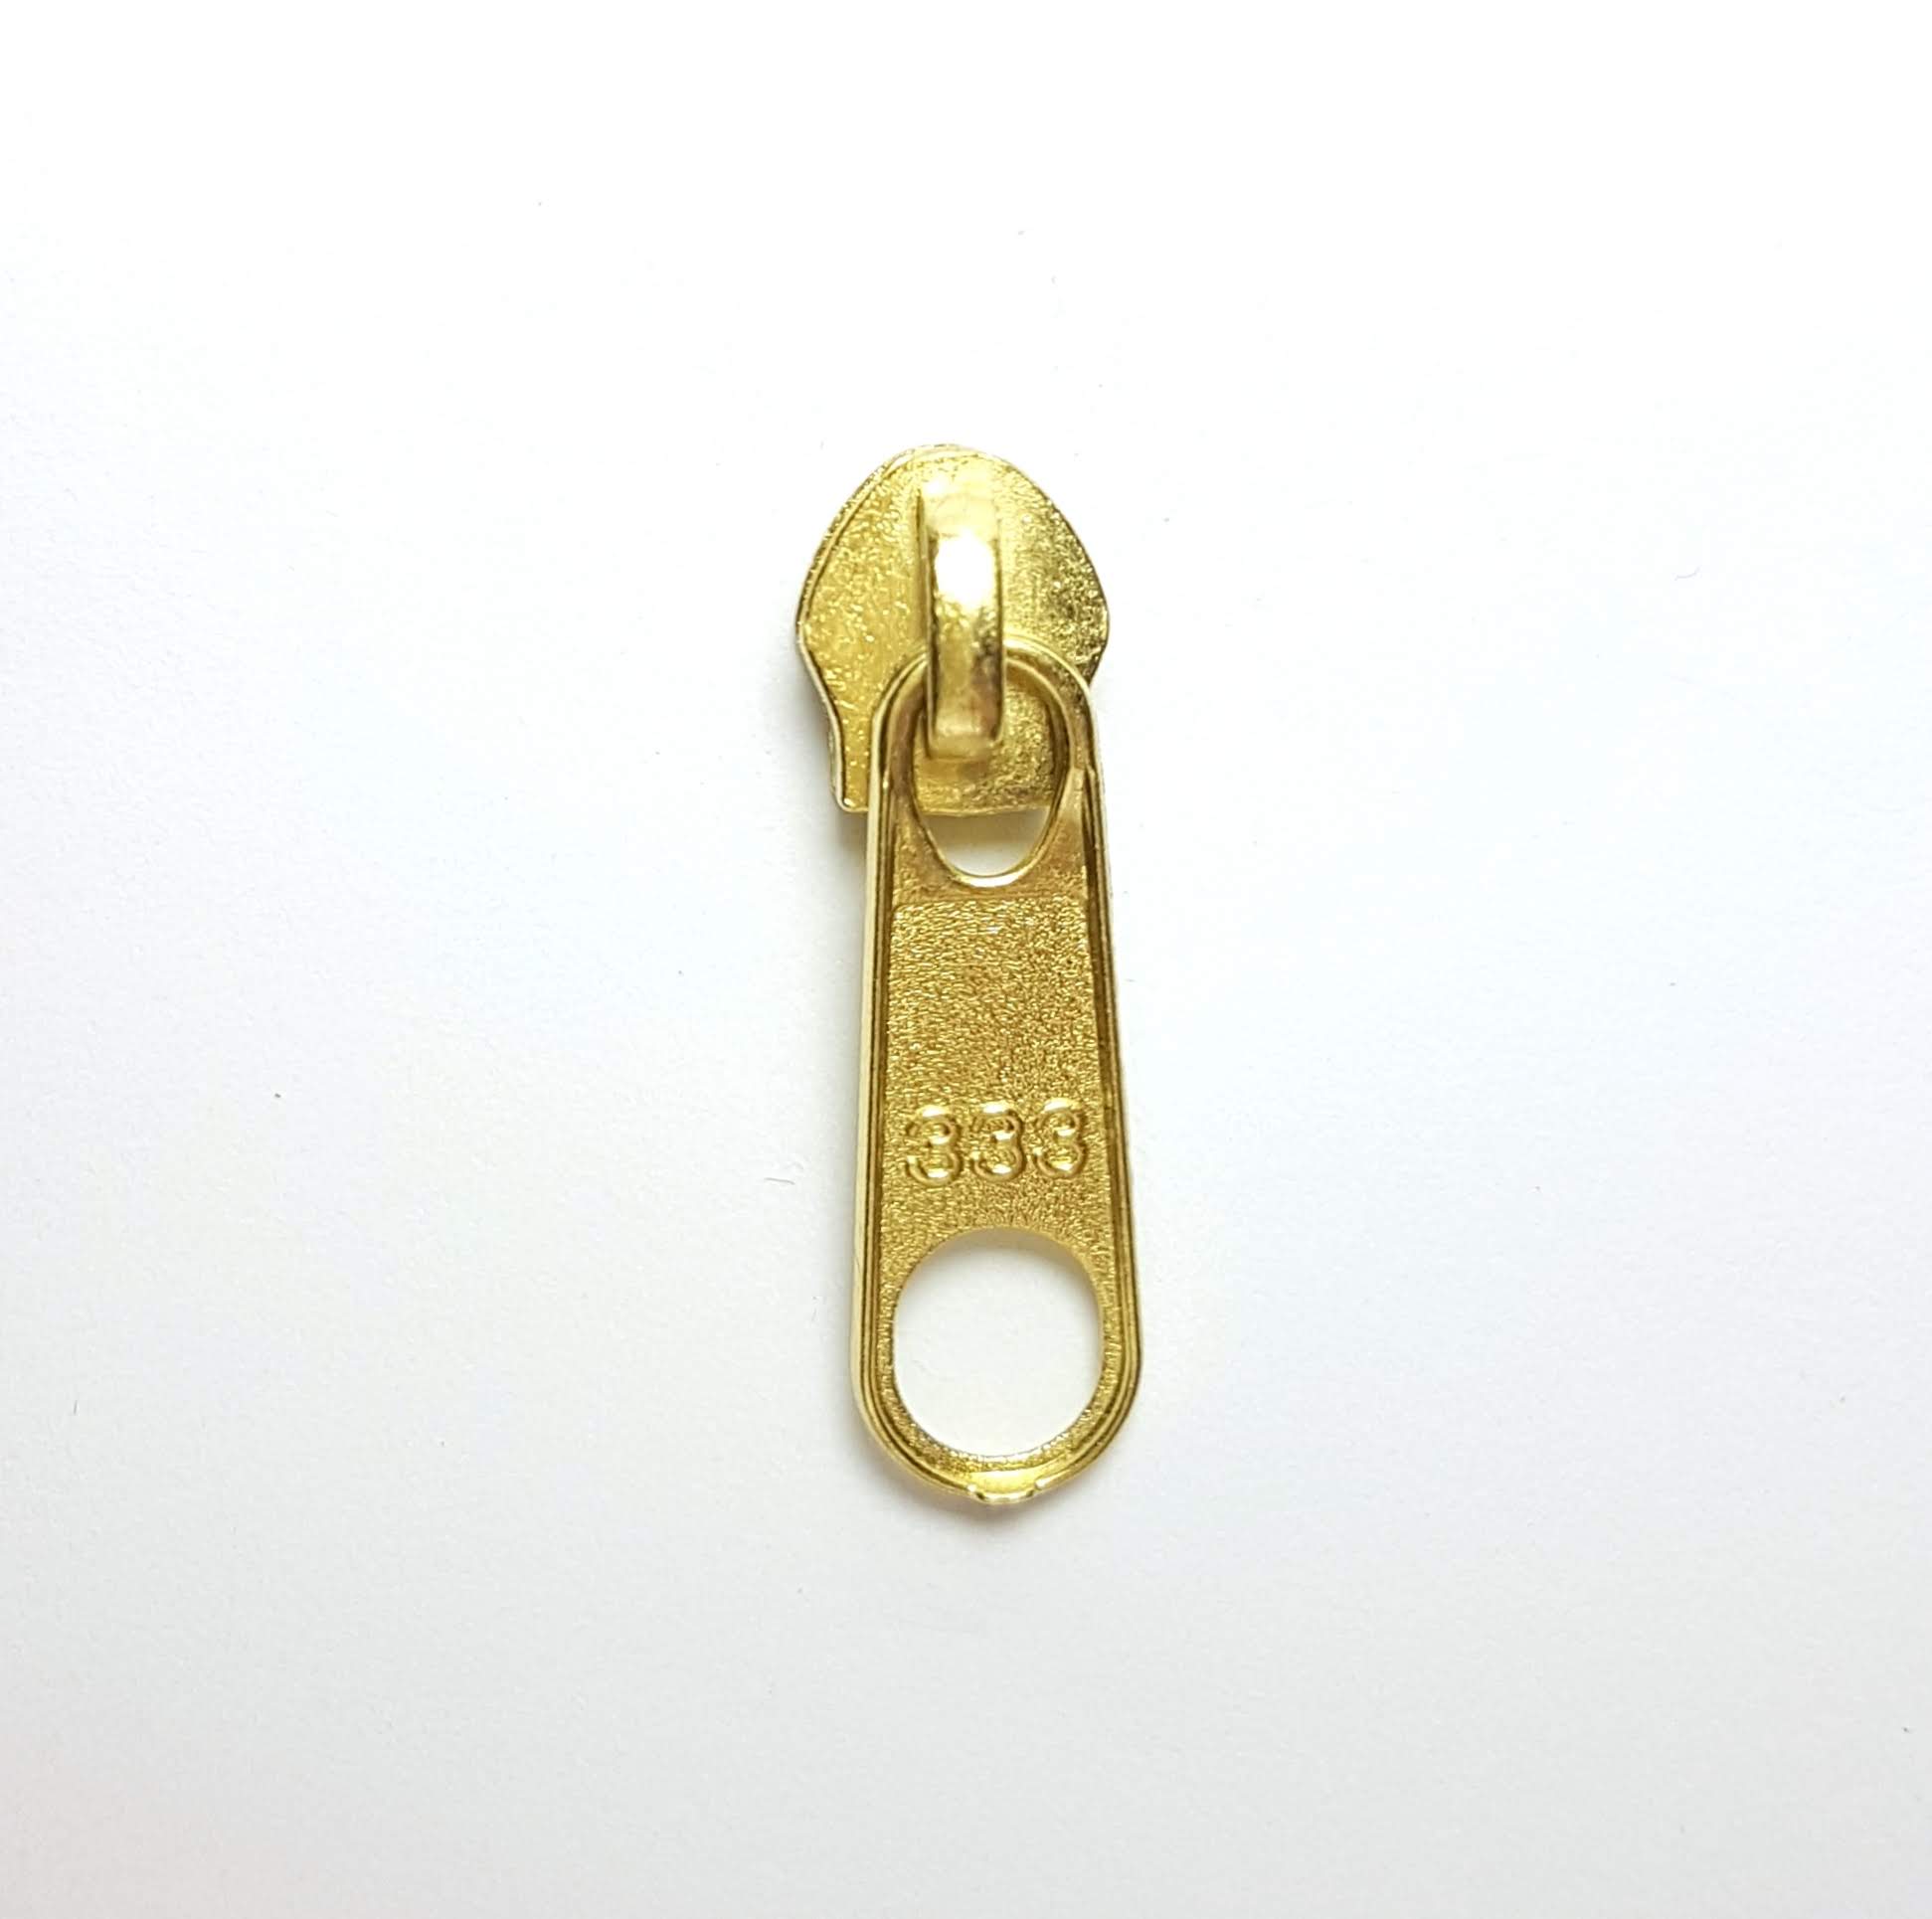 Cursor N.º 5 - Ref. 500 - Dourado